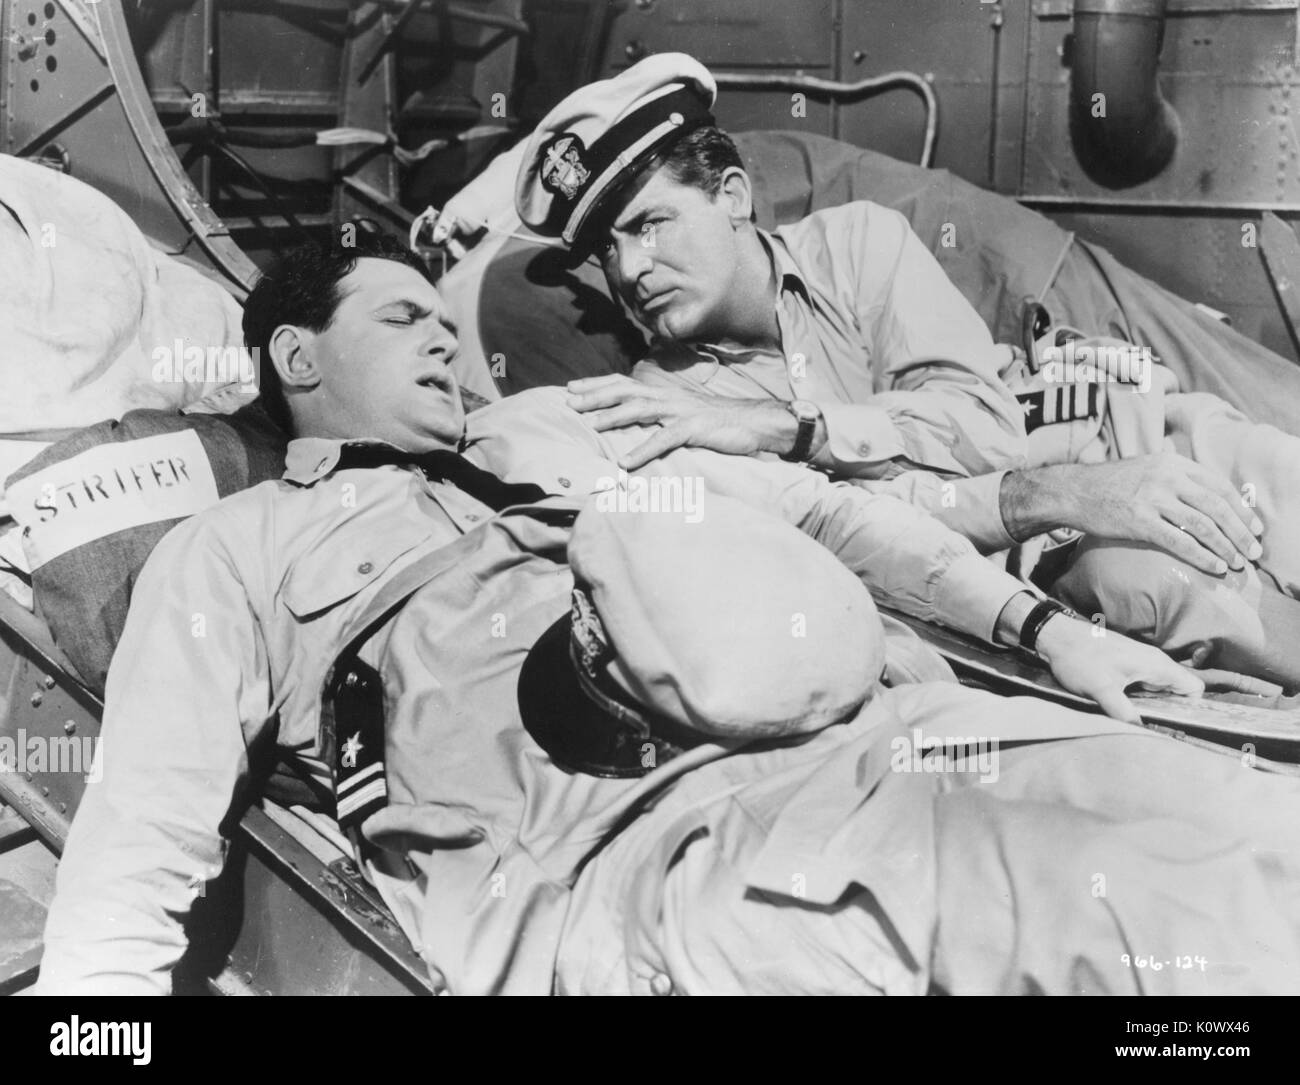 Deux soldats sur une civière, l'un apparaissant être blessés, le second le réconforter, portant des uniformes militaires, dans un film encore non identifiés à partir d'un film de guerre de Hollywood, Hollywood, Californie, 1953. Crédit photo Smith Collection/Gado/Getty Images. Banque D'Images